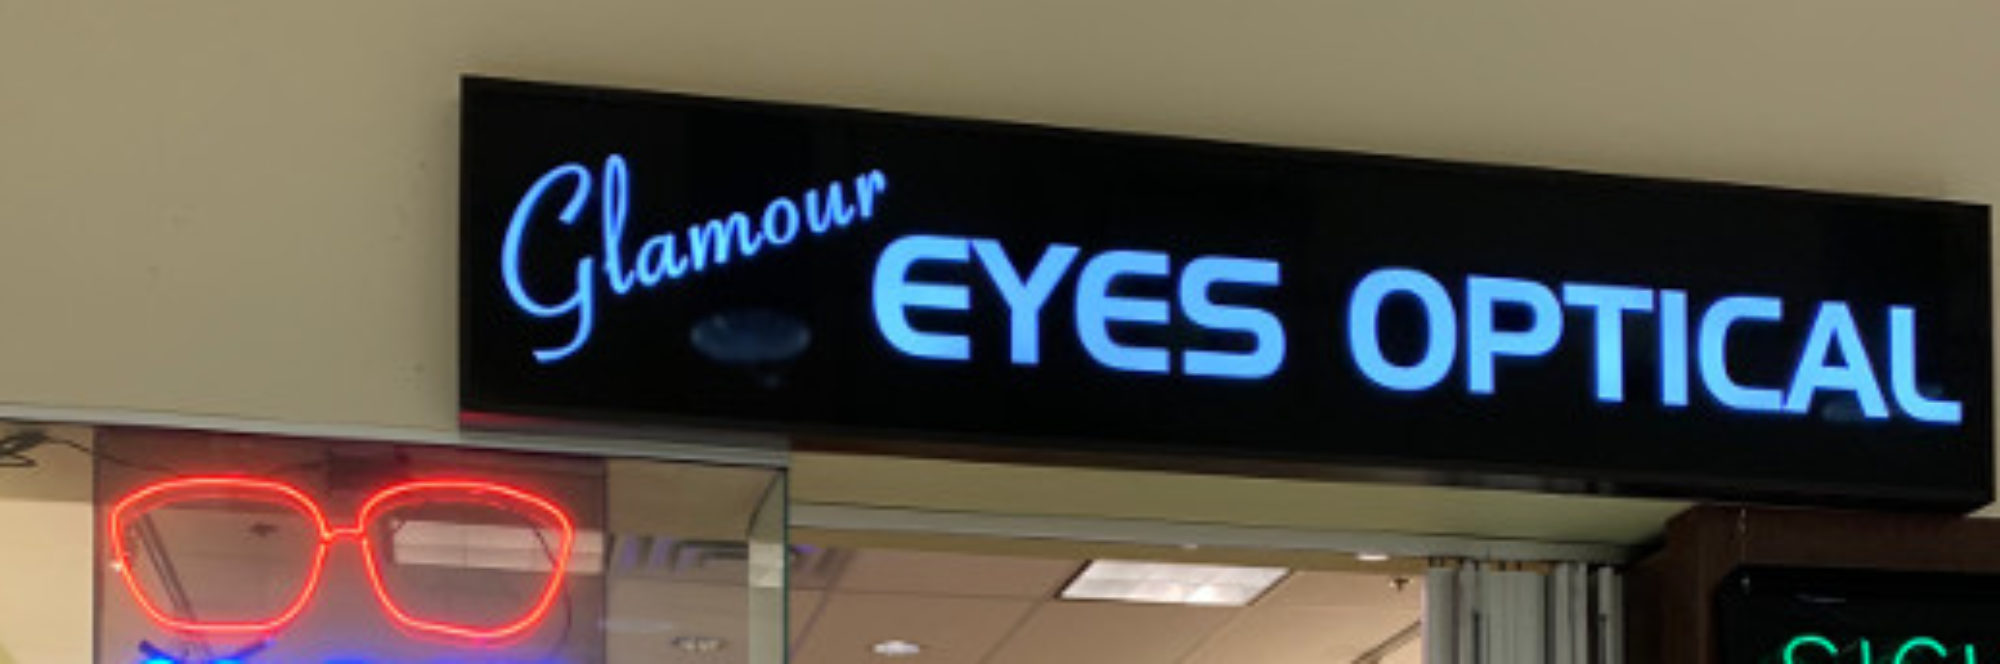 Glamour Eyes Optical